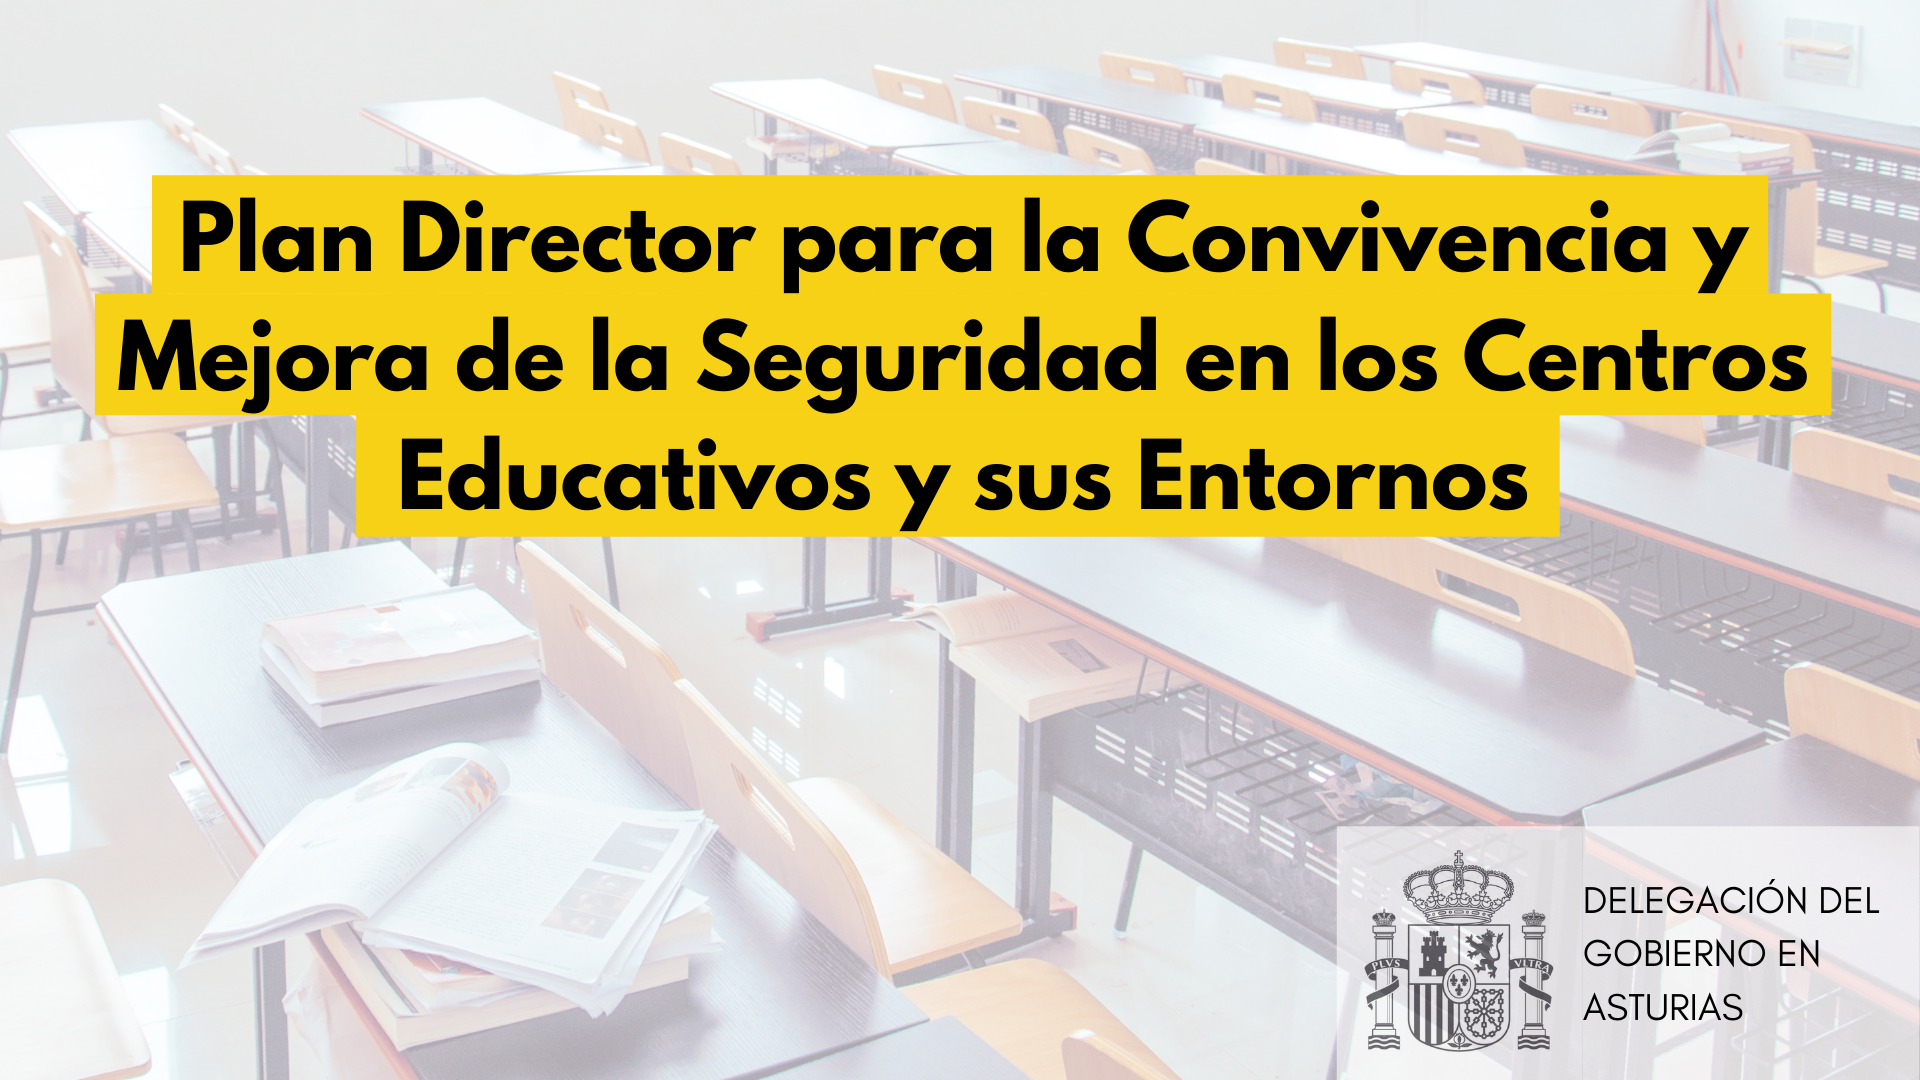 Uno de cada tres centros escolares asturianos se inscribe en el Plan Director para la Convivencia y Mejora de la Seguridad